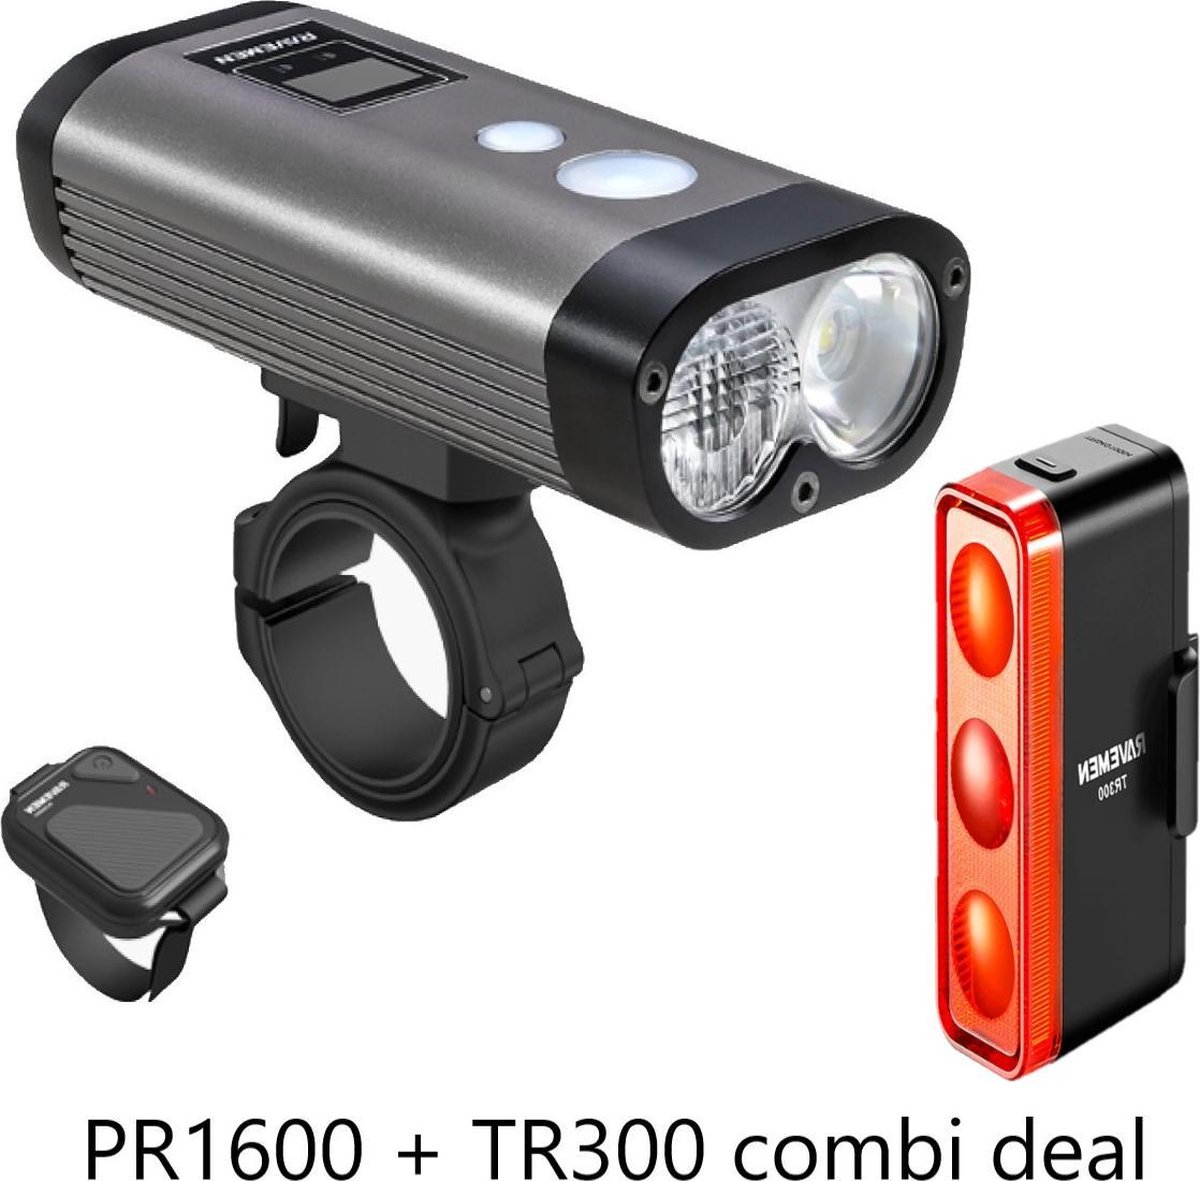 Ravemen fietsverlichtingsset LS30 combi (PR1600 koplamp + TR300 achterlicht) - USB Oplaadbaar - Voorlicht en Achterlicht Fietslamp - Waterdicht Fietslicht